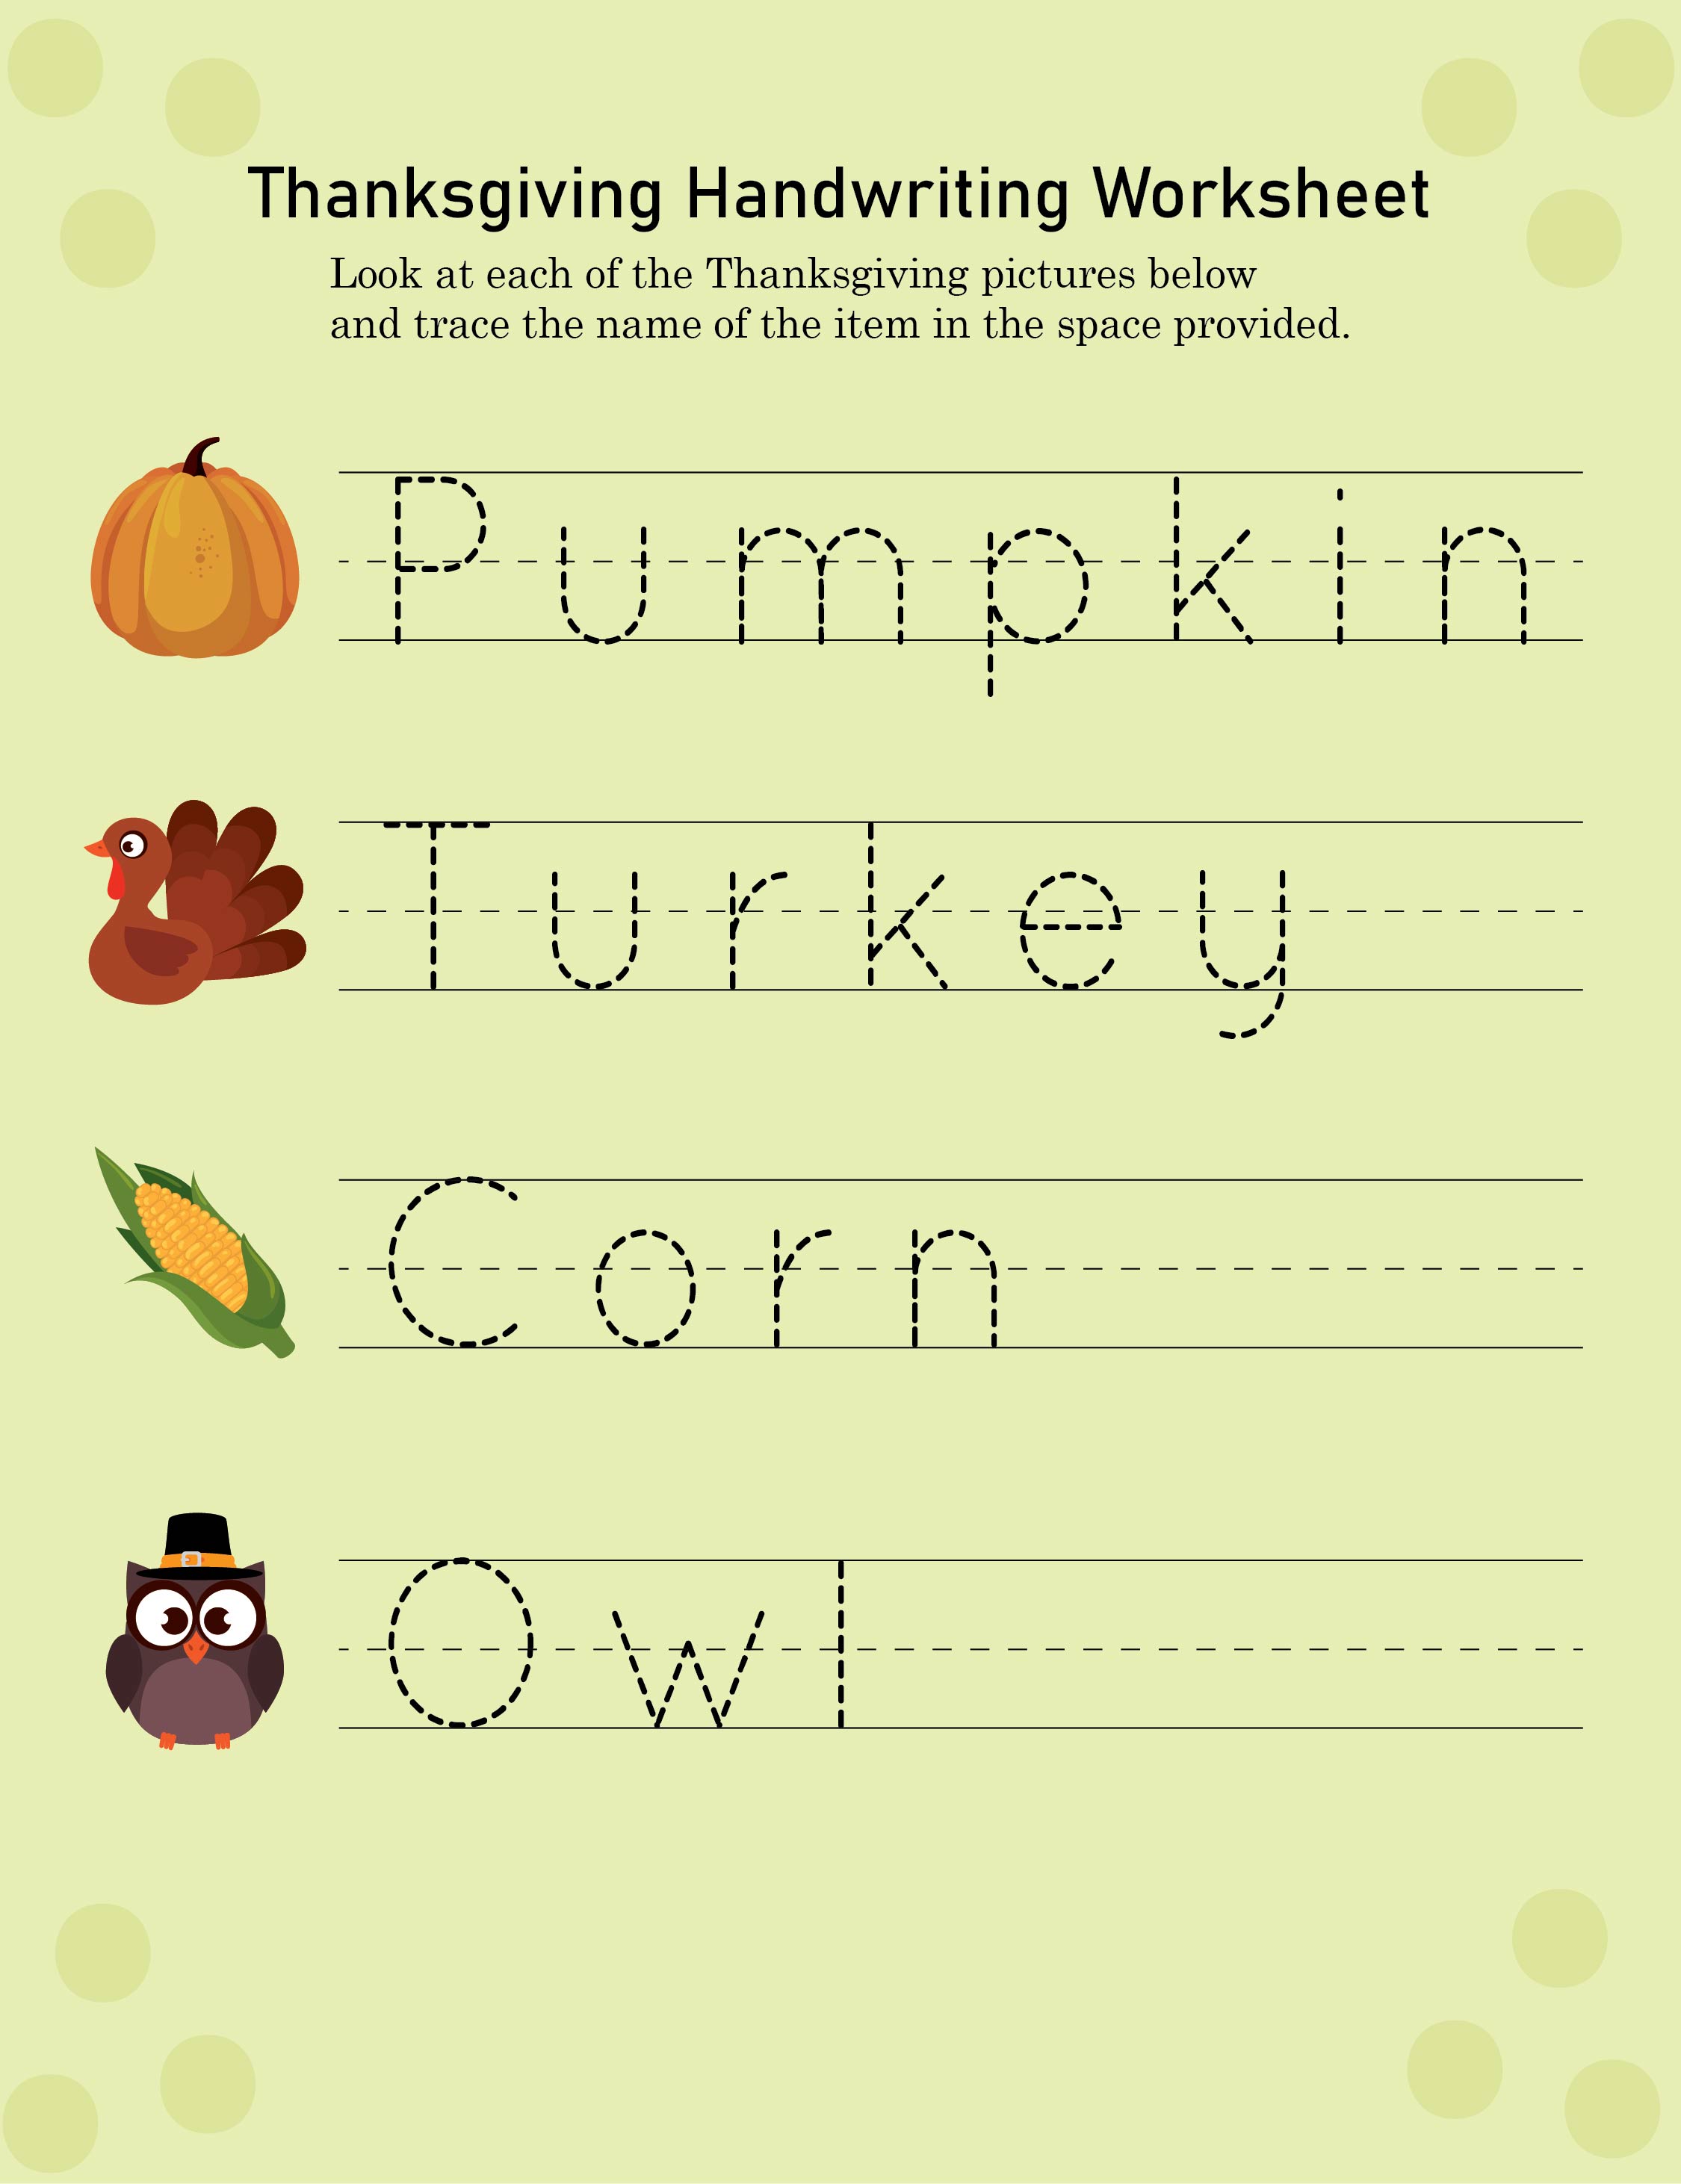 Thanksgiving-Handwriting-Worksheet